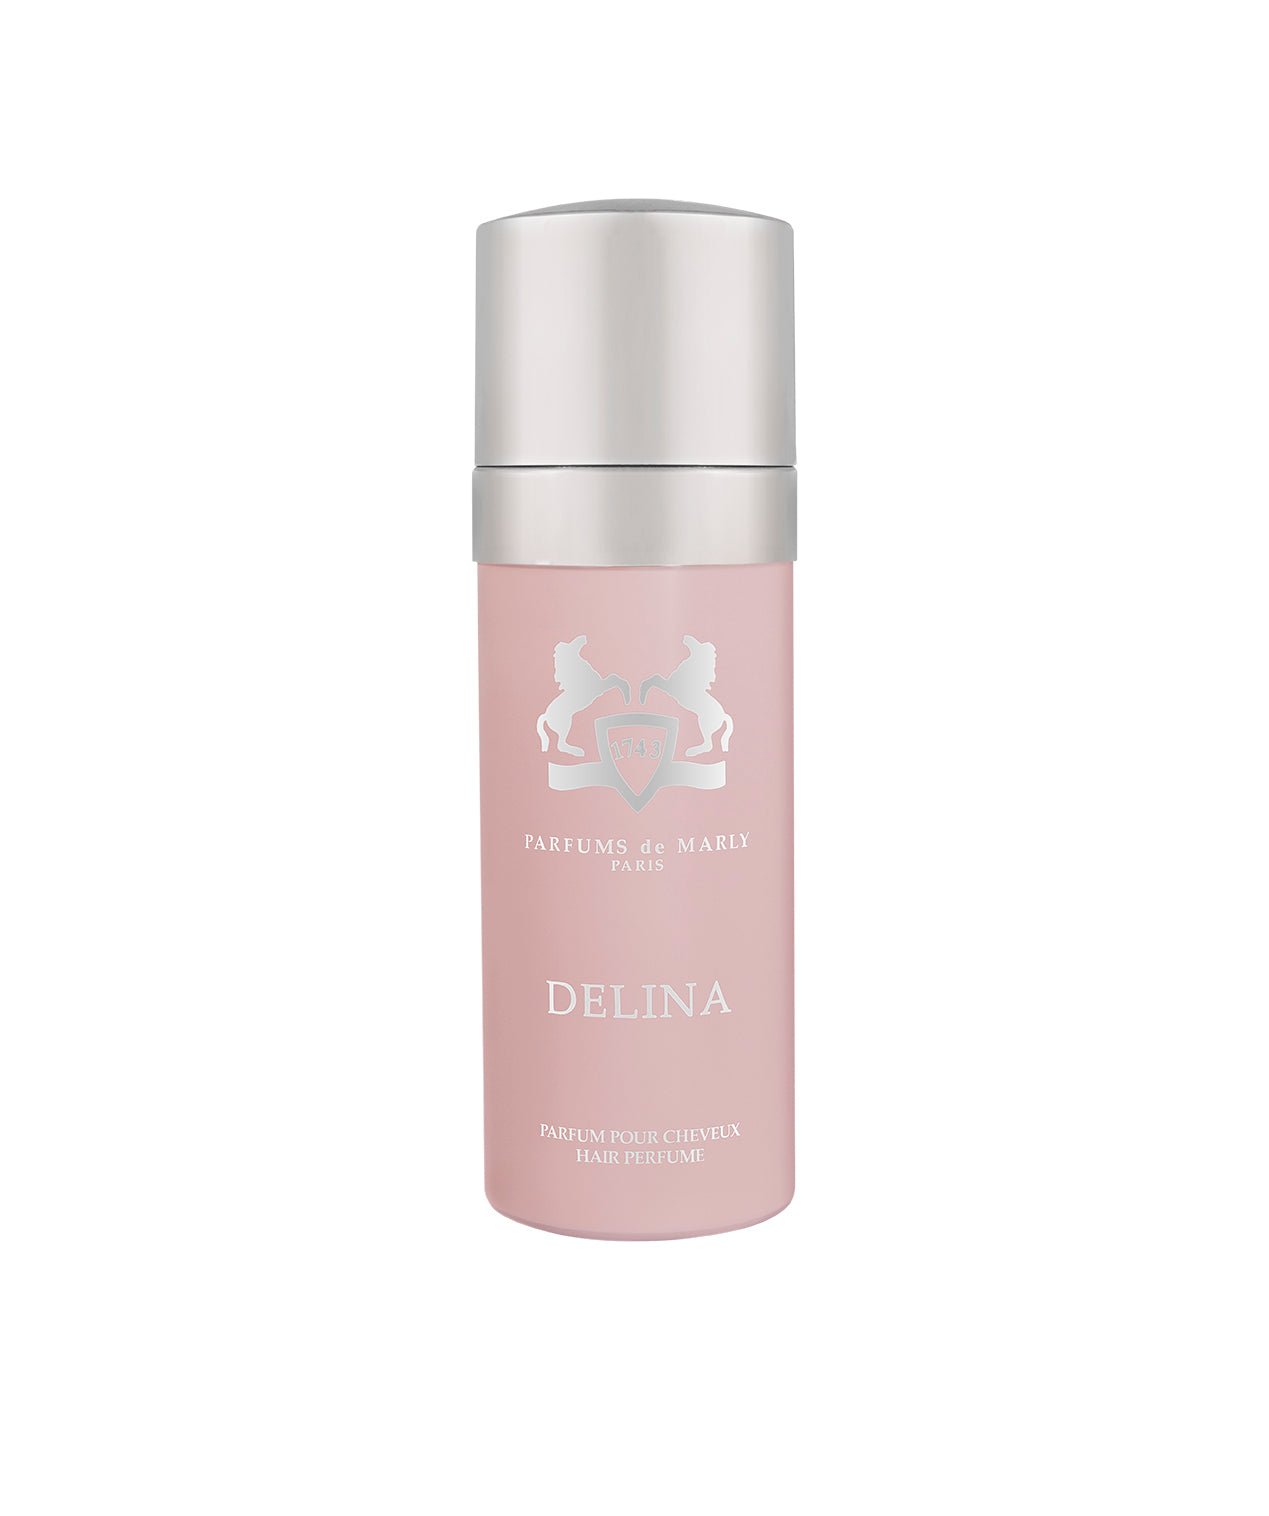 Parfums de Marly – Delina Hair Perfum - Danae Profumeria